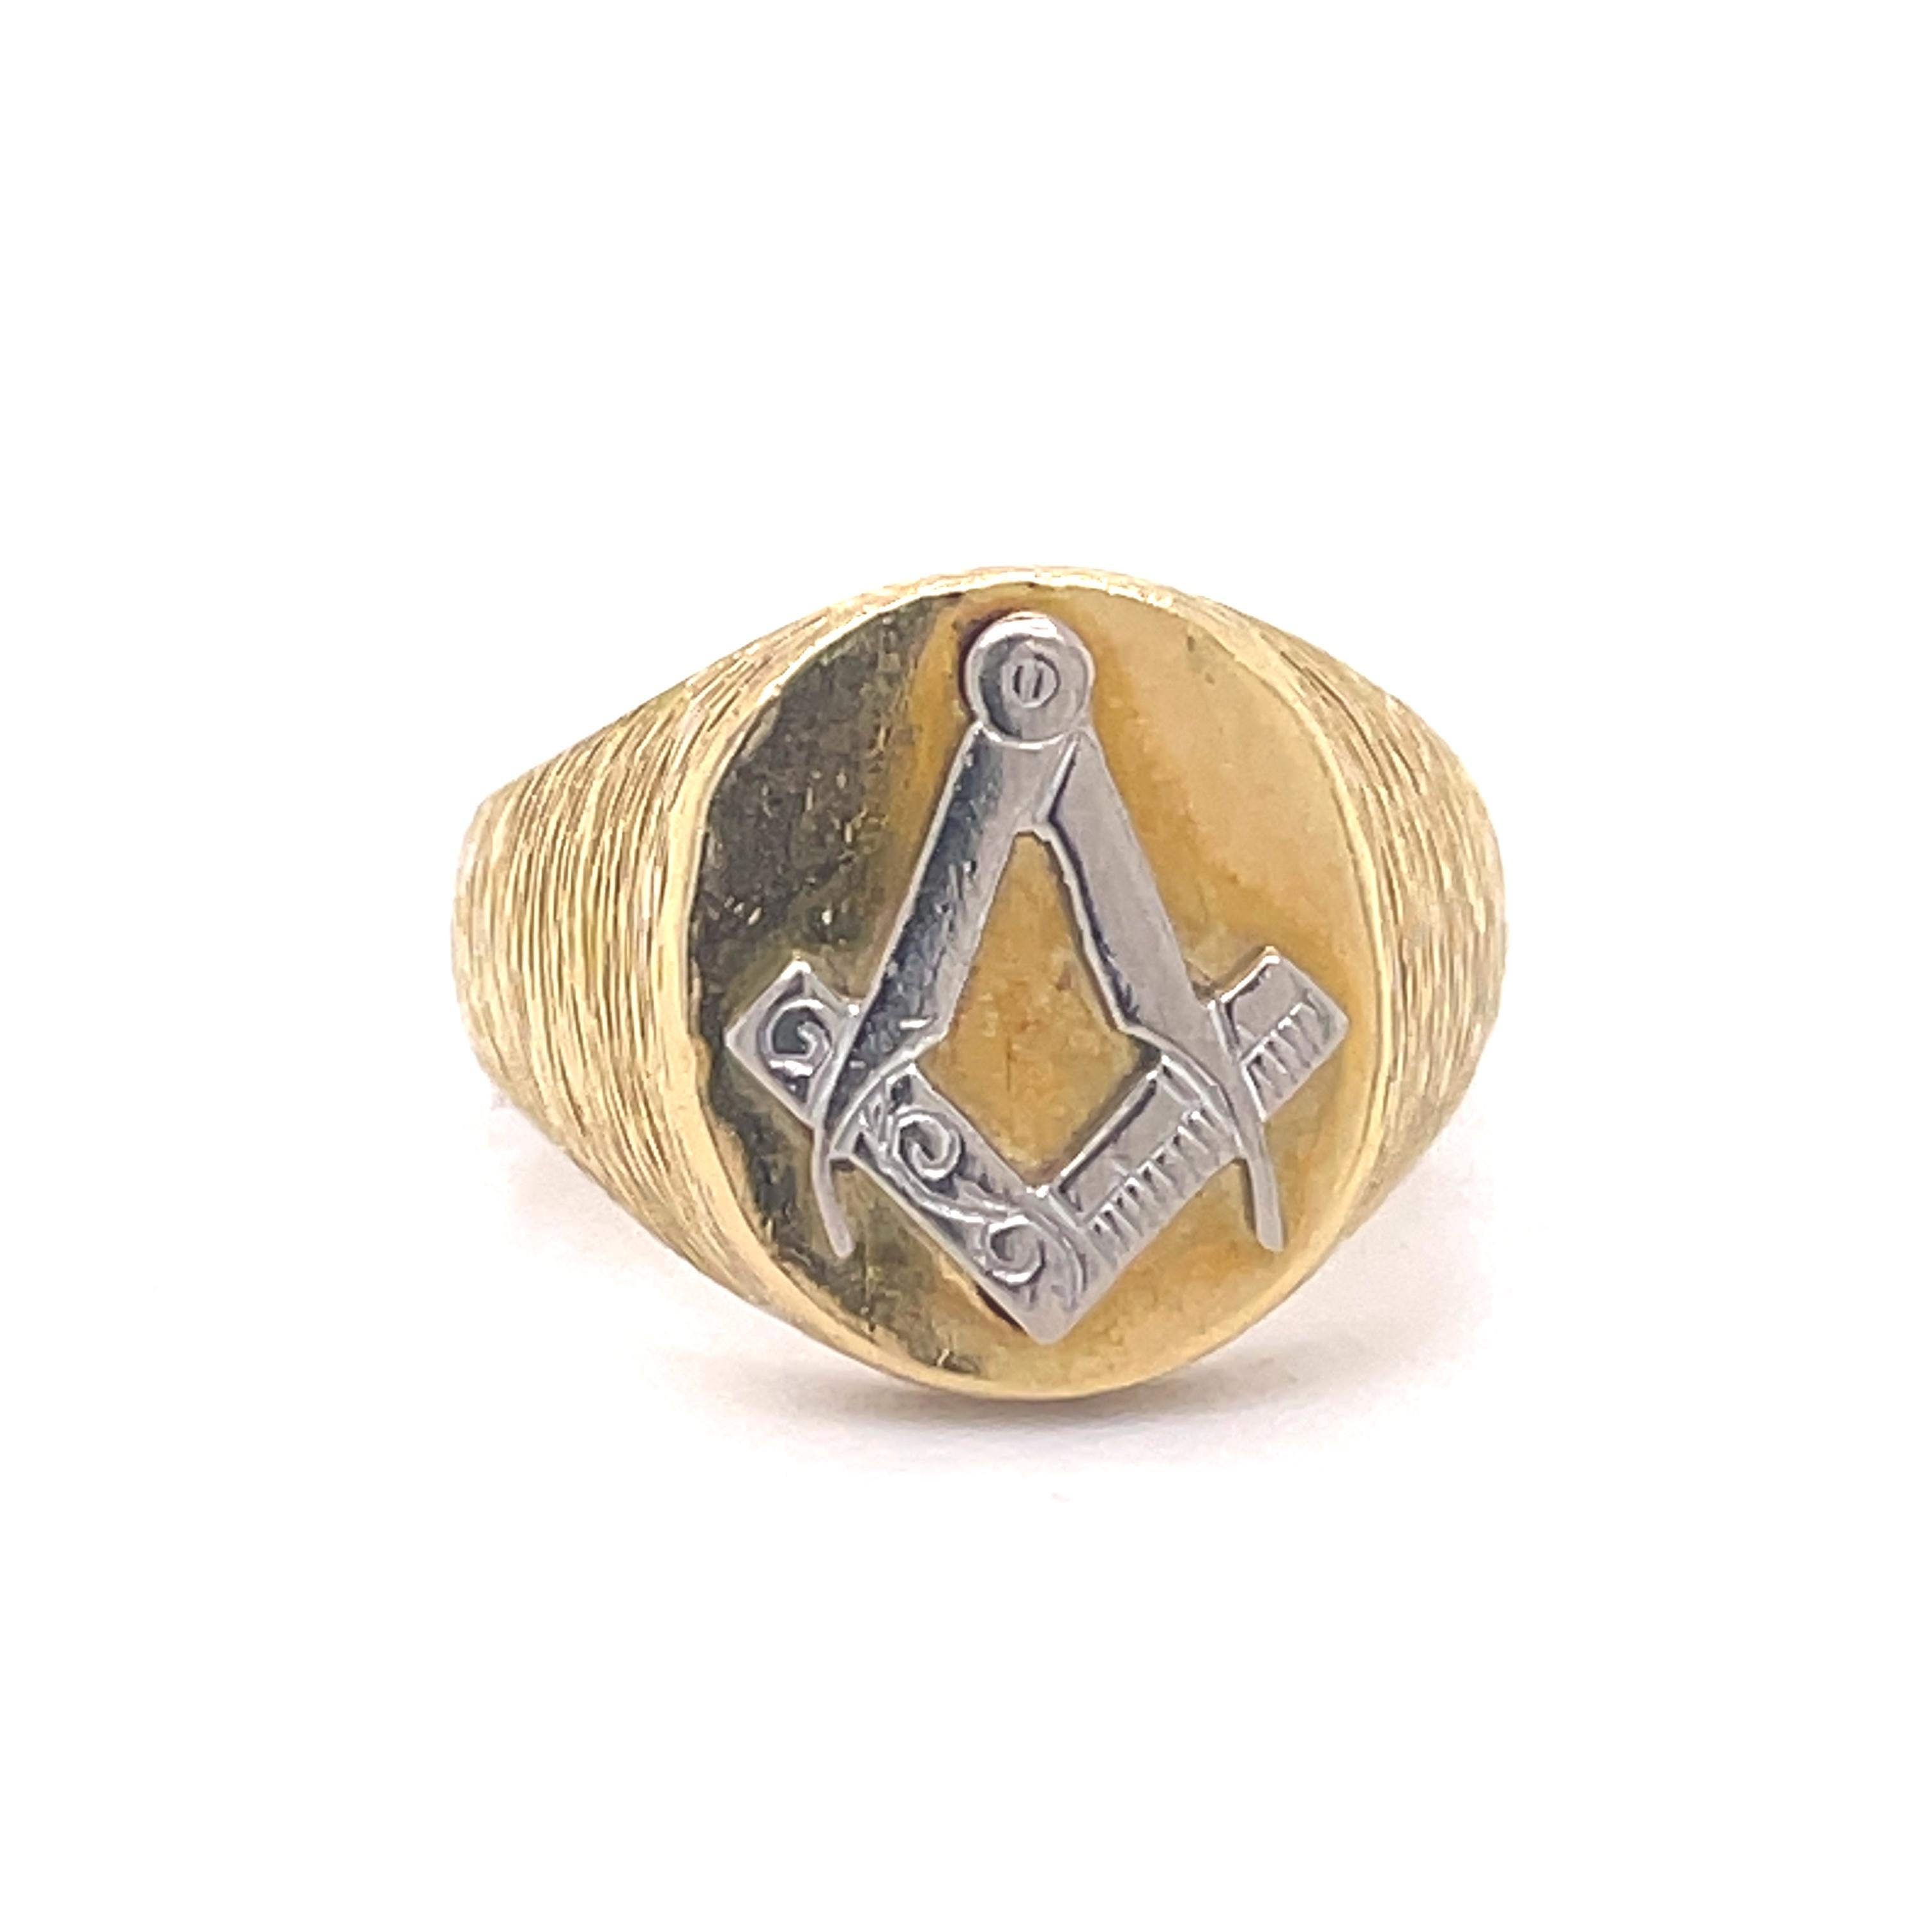 Free Masons Pinky ring - Kutchinsky jewelry, 18K yellow gold, freemasons symbol For Sale 2